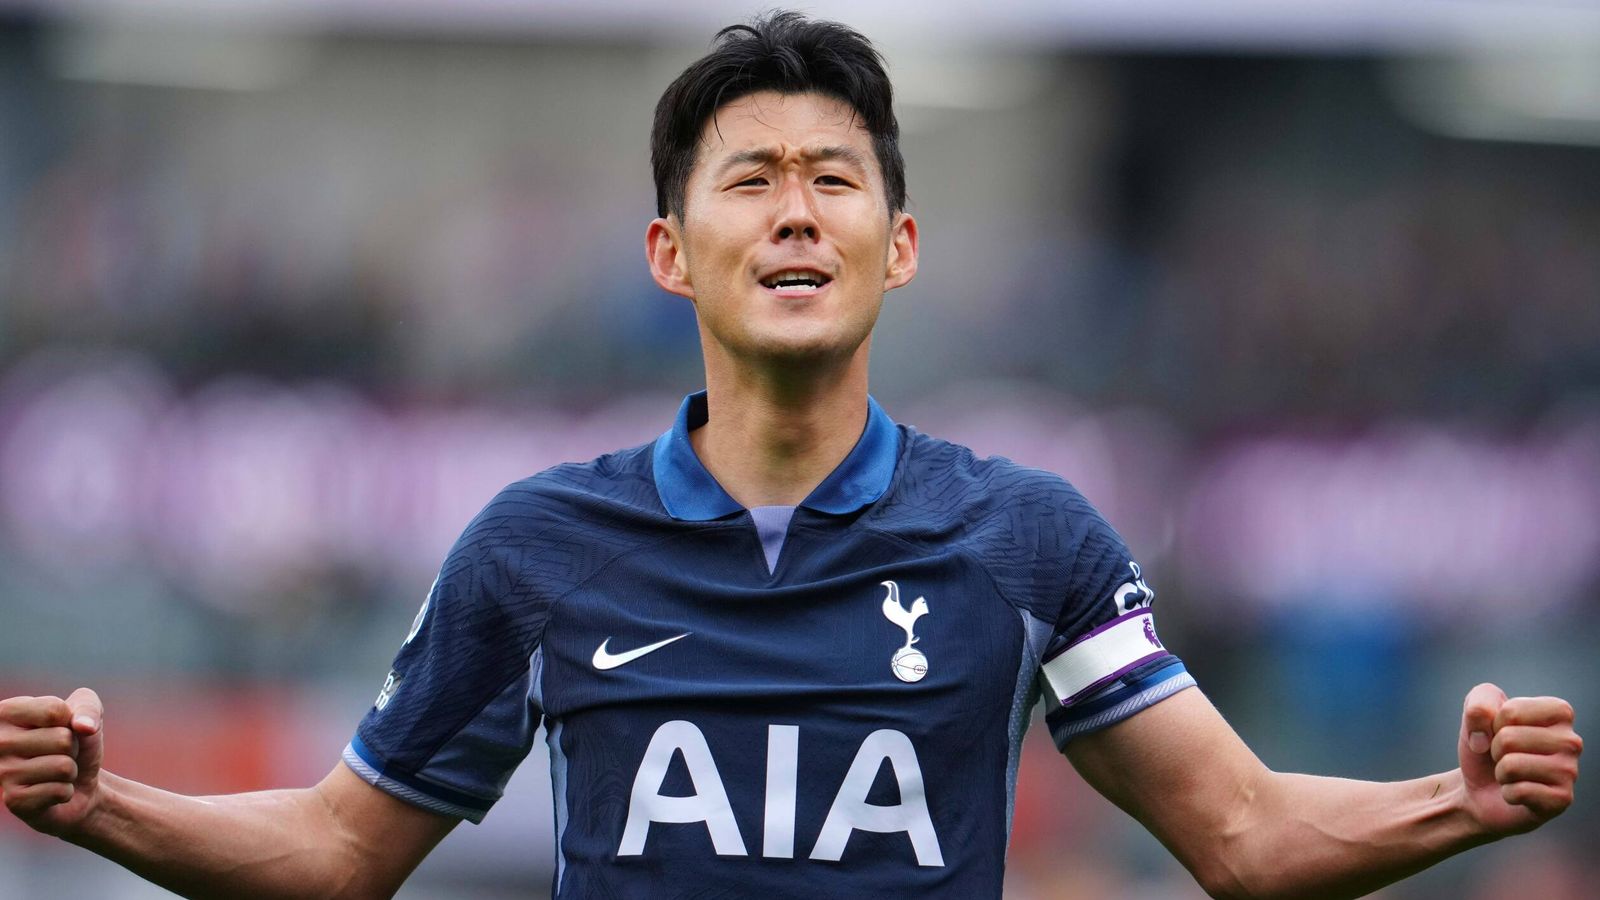 Burnley 2-5 Tottenham : Heung-min Son marque un triplé pour préserver l’invincibilité de Tottenham en Premier League |  actualités du football